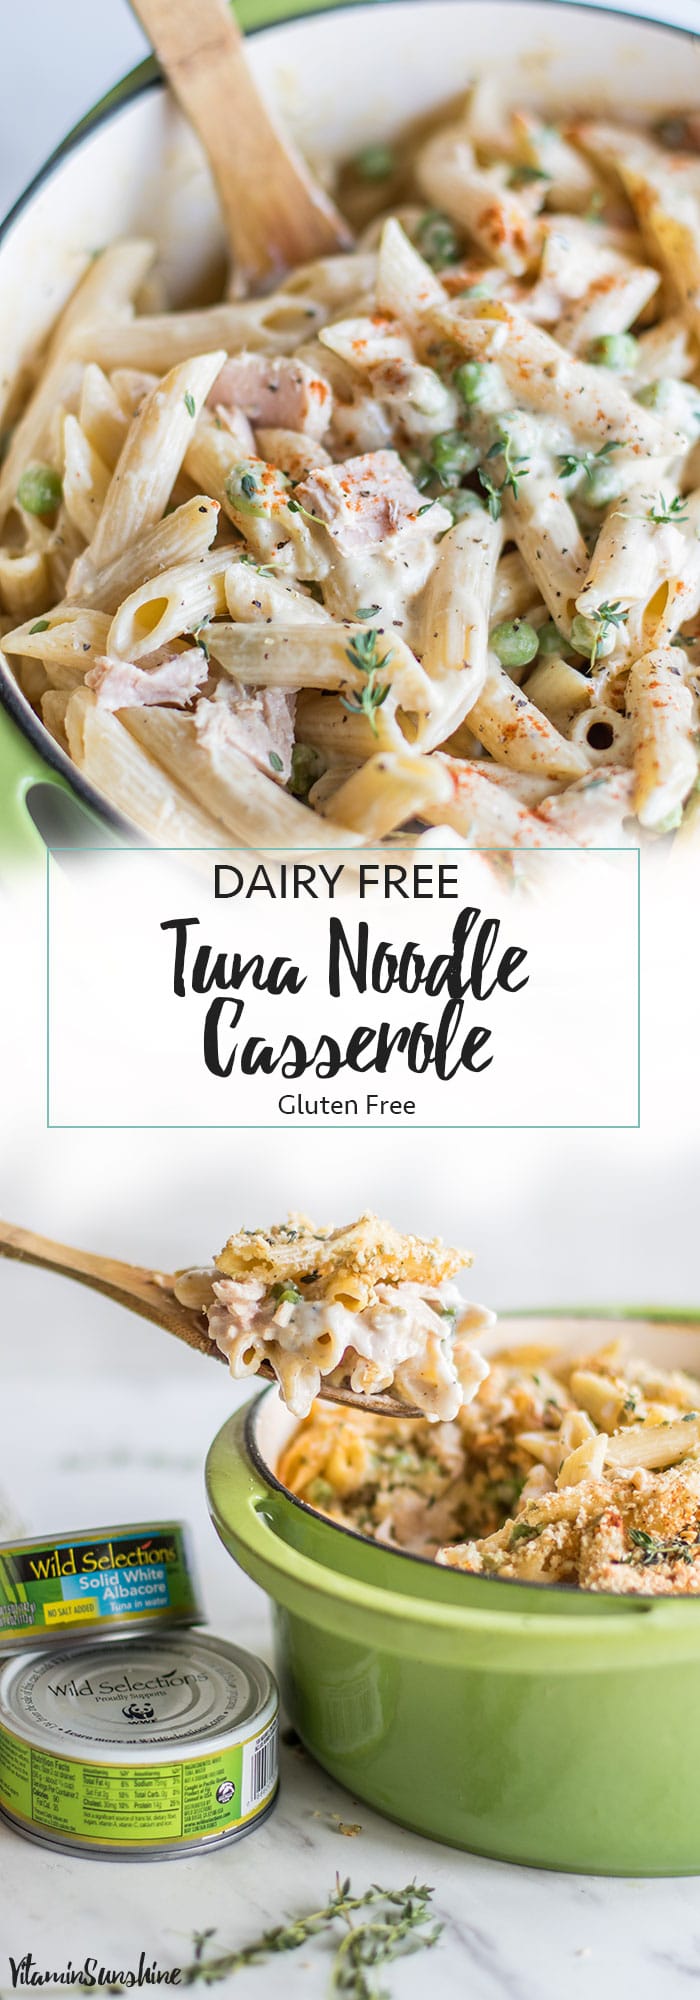 Gluten Free Tuna Casserole (Dairy Free) - Sunkissed Kitchen